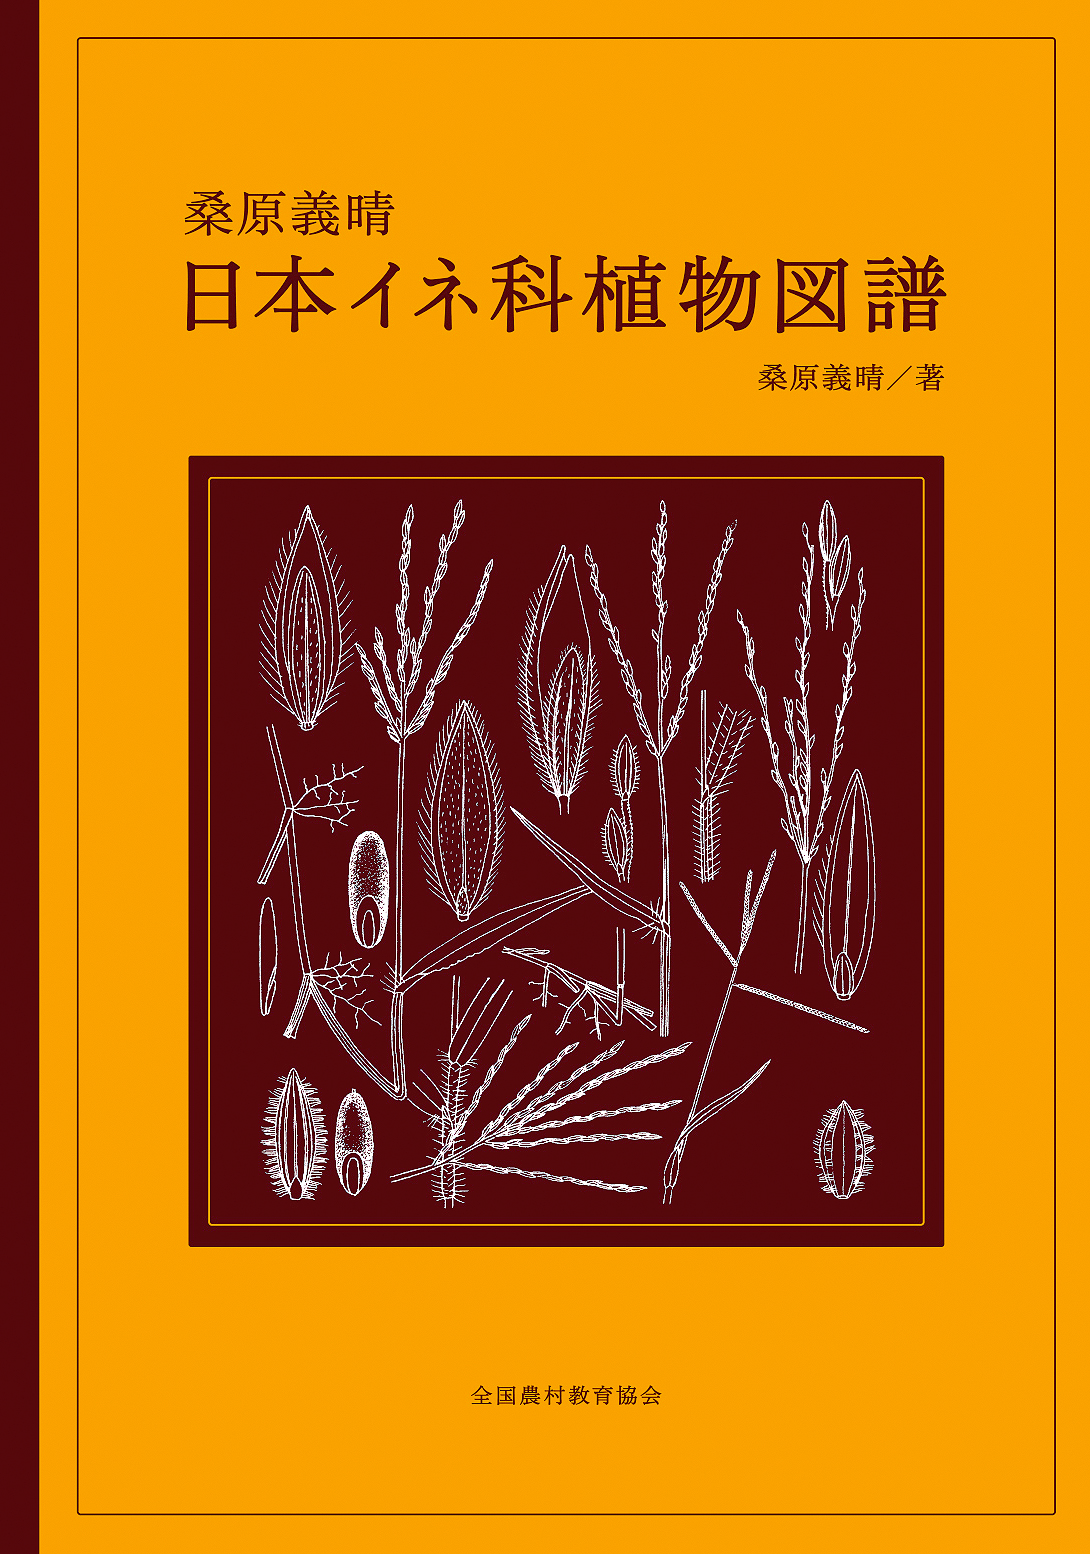 桑原義晴 日本イネ科植物図譜 - 全国農村教育協会 出版サイト